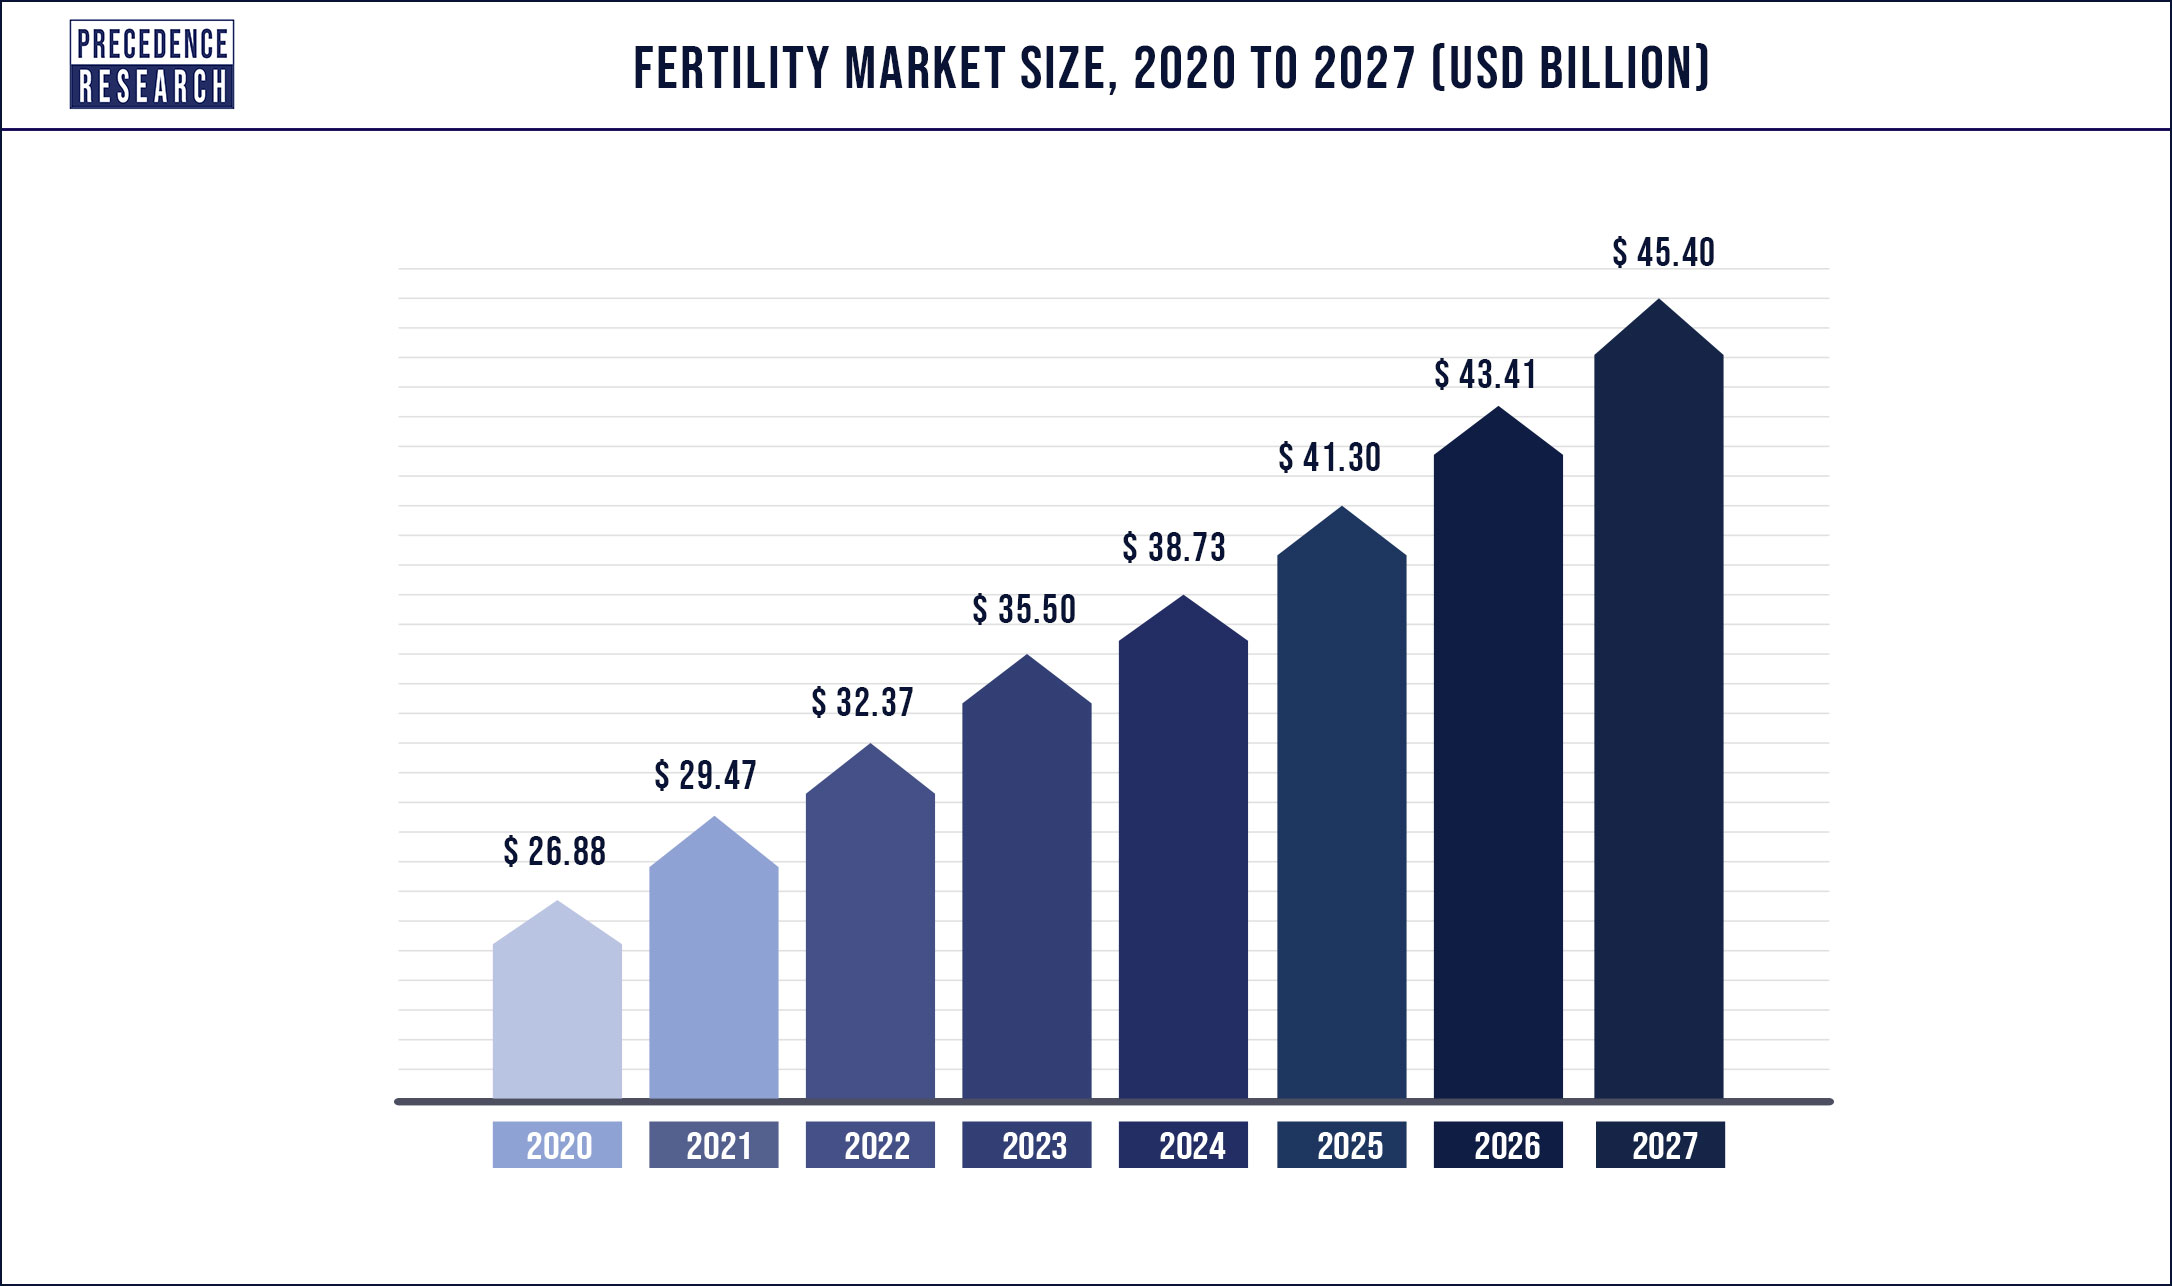 Fertility market size